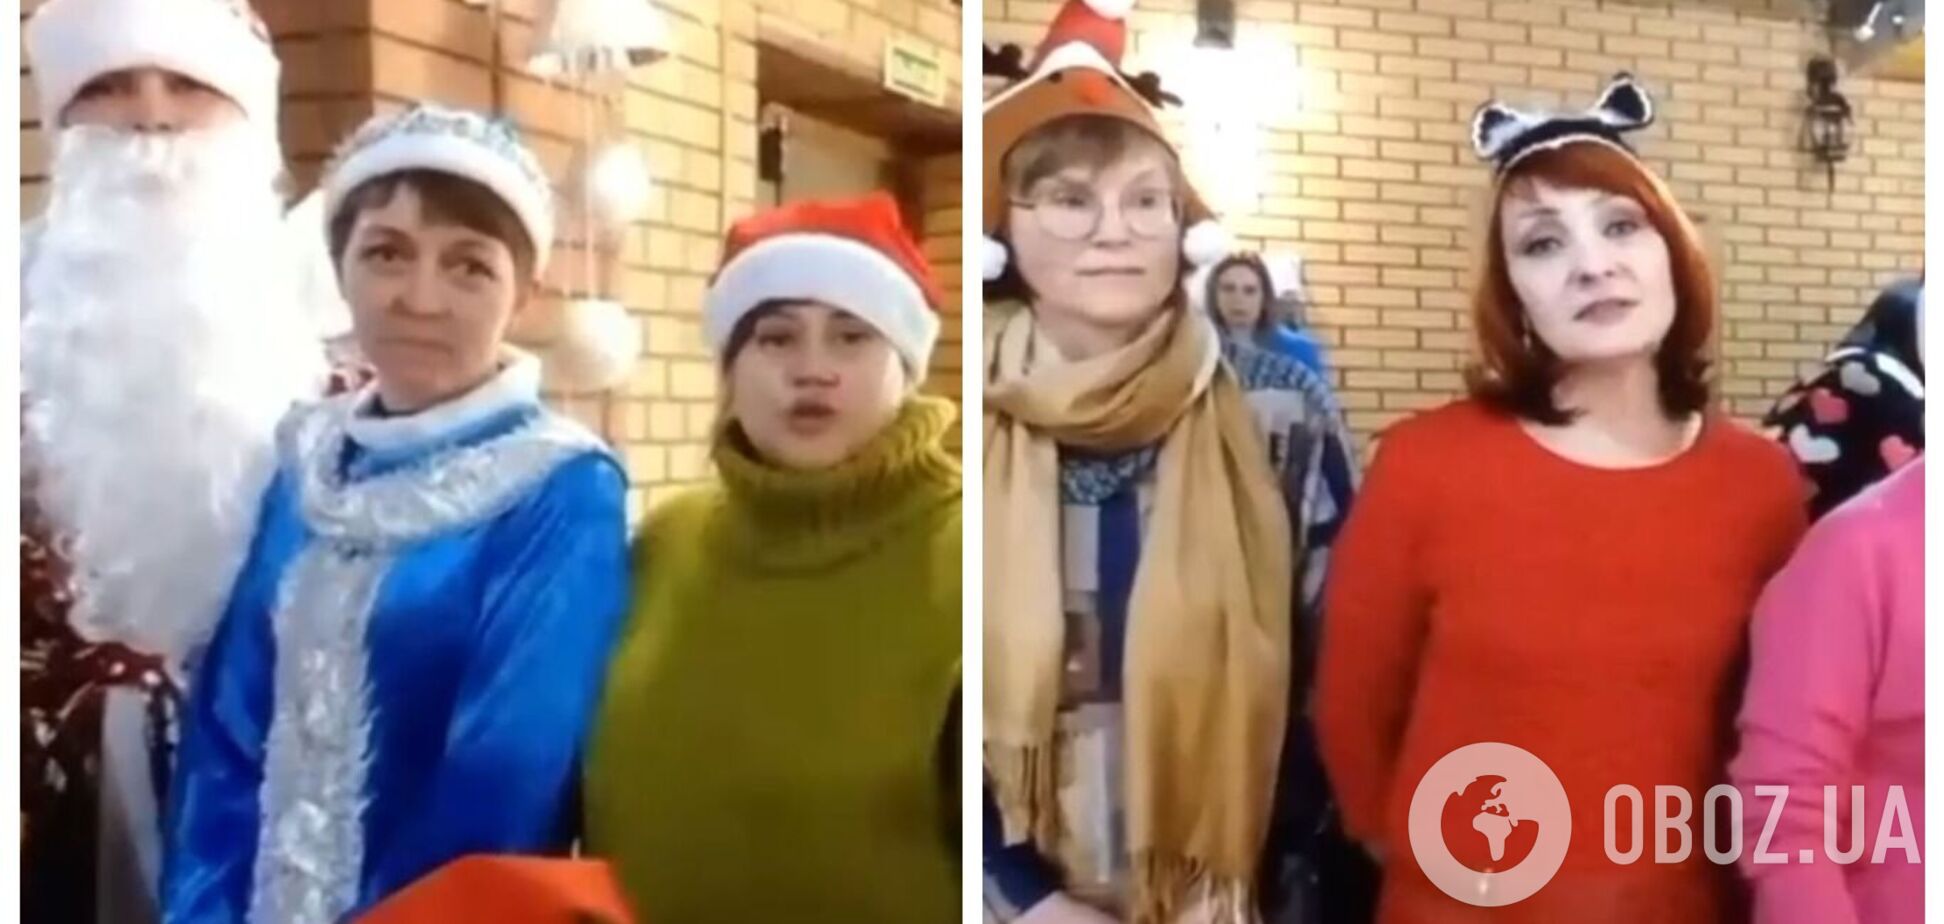 Ідентифіковано росіянок, які в новорічному привітанні закликали військових Путіна нищити українців. Відео 